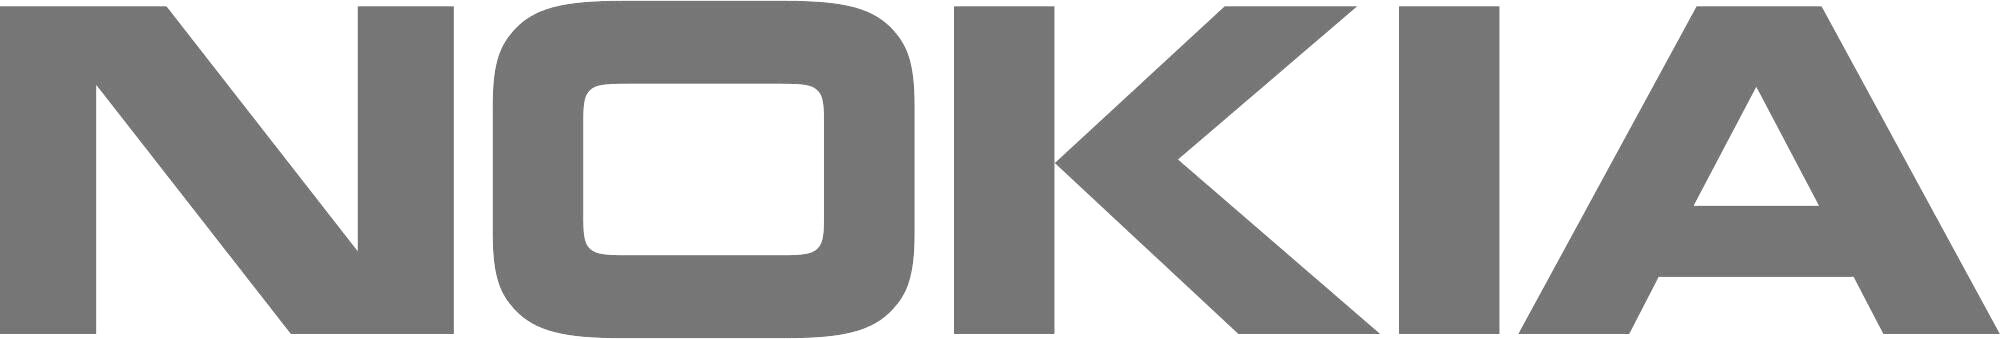 nokia-logo-png-1476.jpg